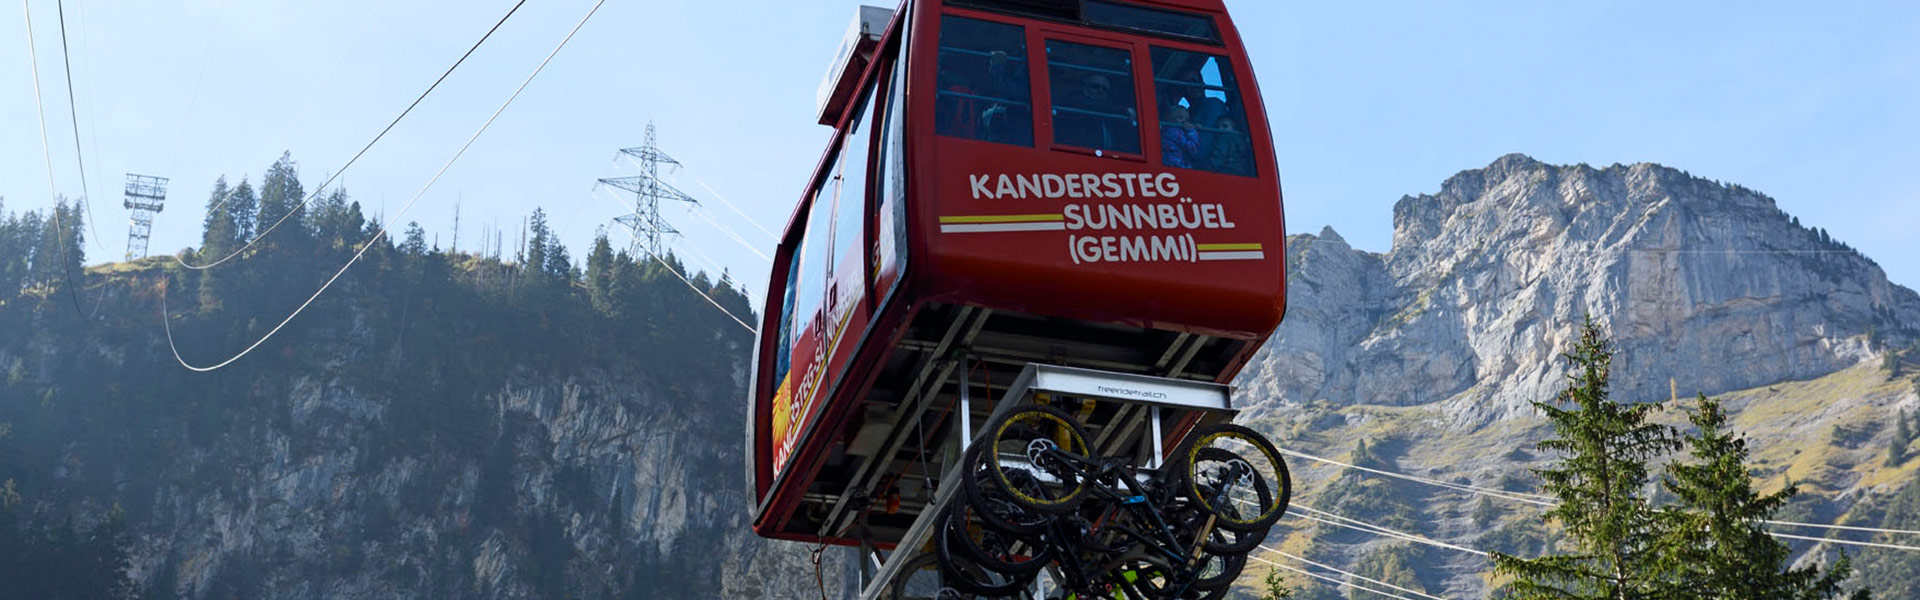 Adelboden_Lenk_Kandersteg_Bike_Transport_Sunnbuel_head